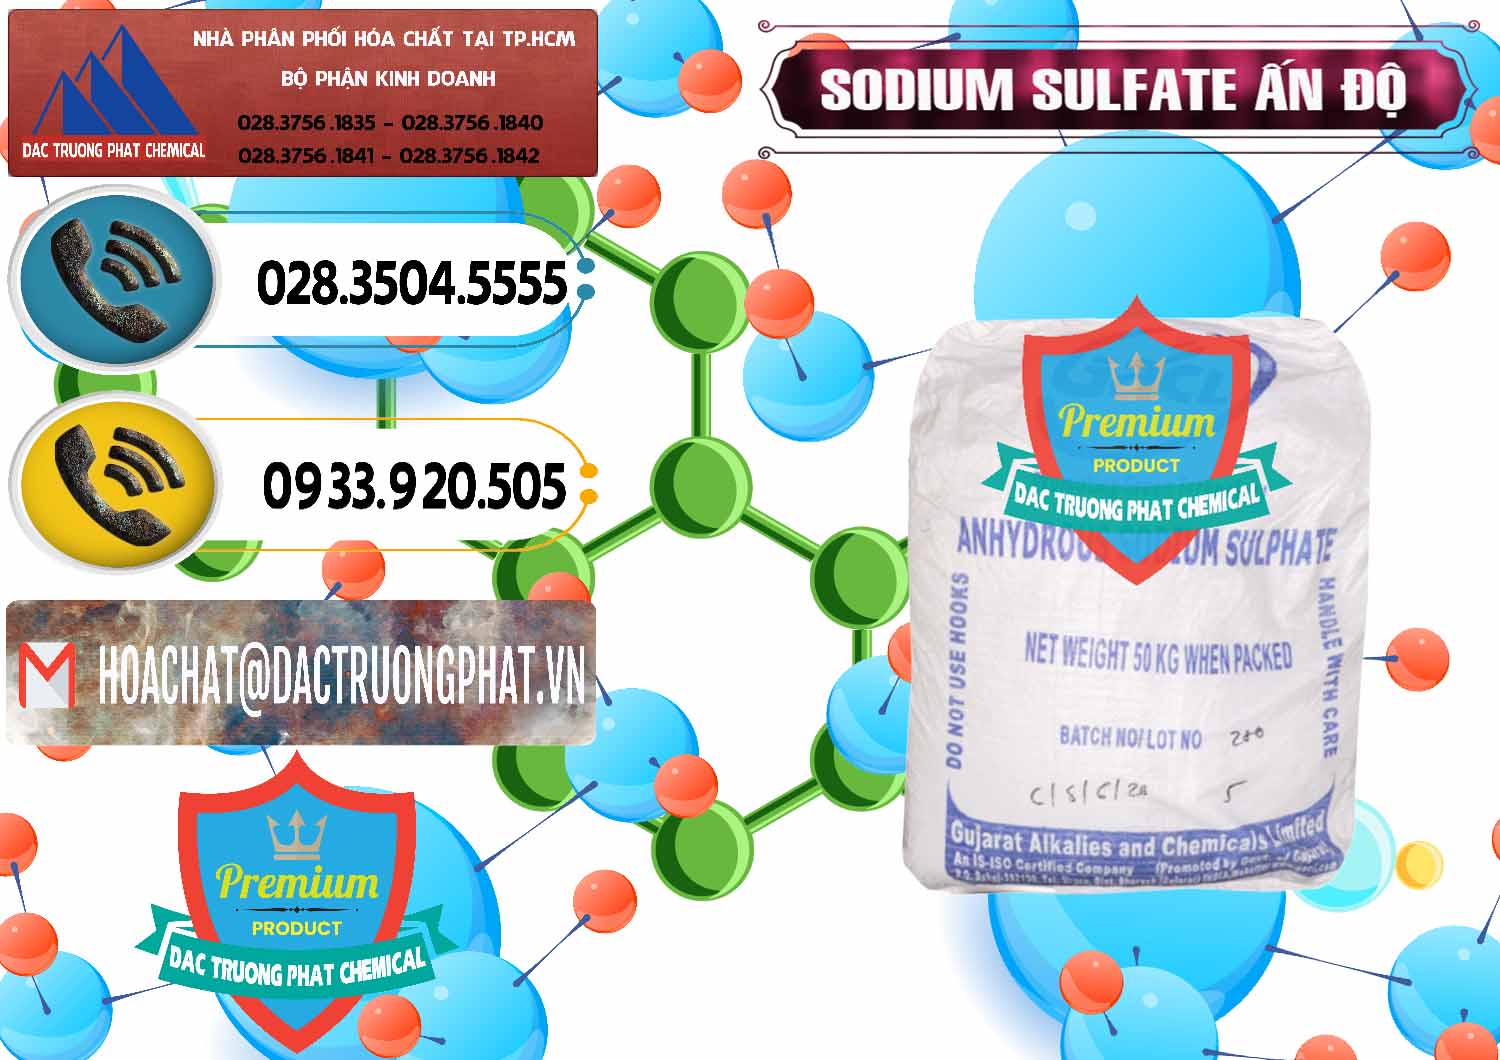 Cty kinh doanh & bán Sodium Sulphate - Muối Sunfat Na2SO4 GACL Ấn Độ India - 0461 - Công ty kinh doanh & cung cấp hóa chất tại TP.HCM - hoachatdetnhuom.vn